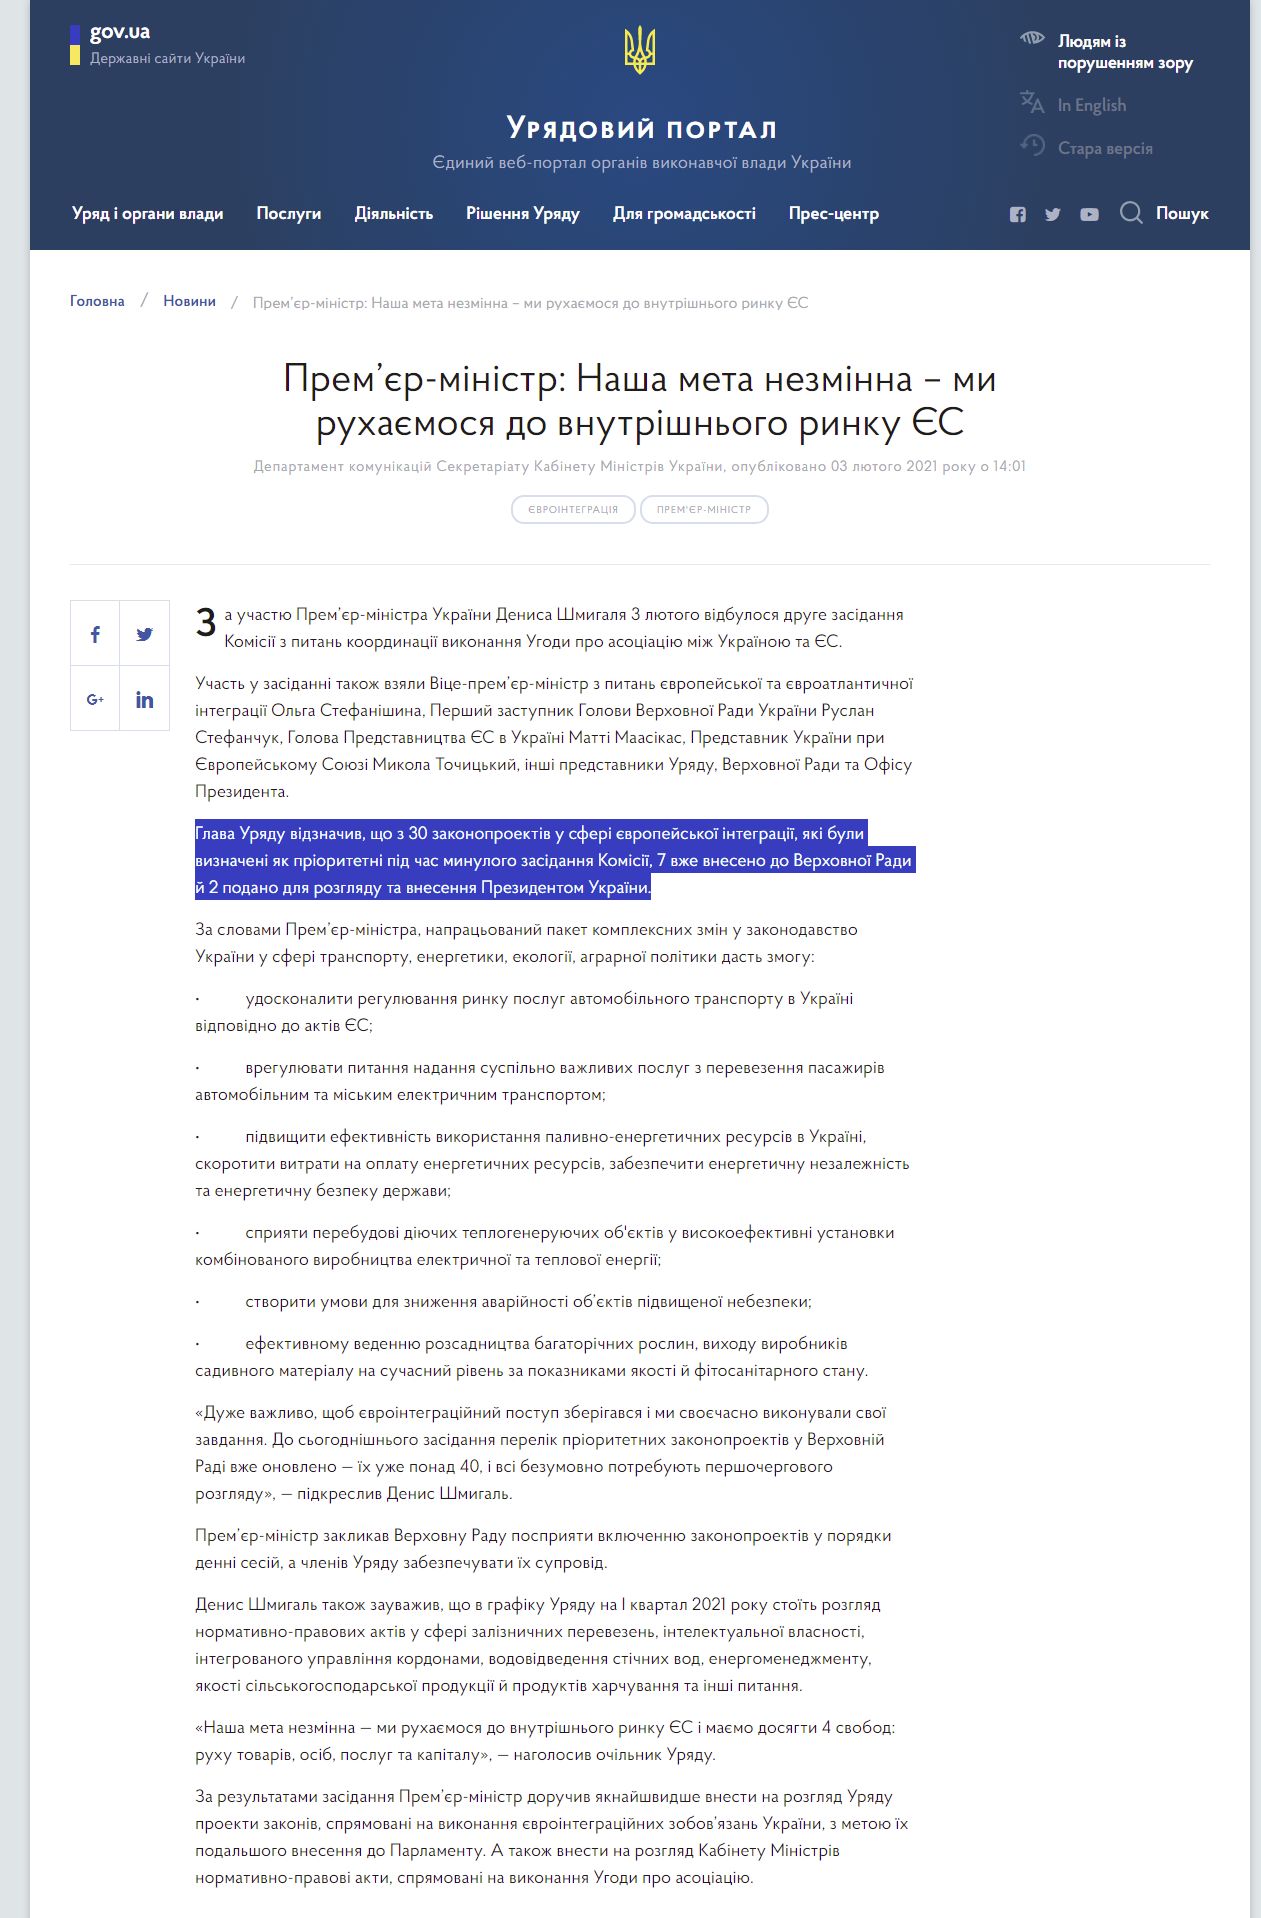 https://www.kmu.gov.ua/news/premyer-ministr-nasha-meta-nezminna-mi-ruhayemosya-do-vnutrishnogo-rinku-yes